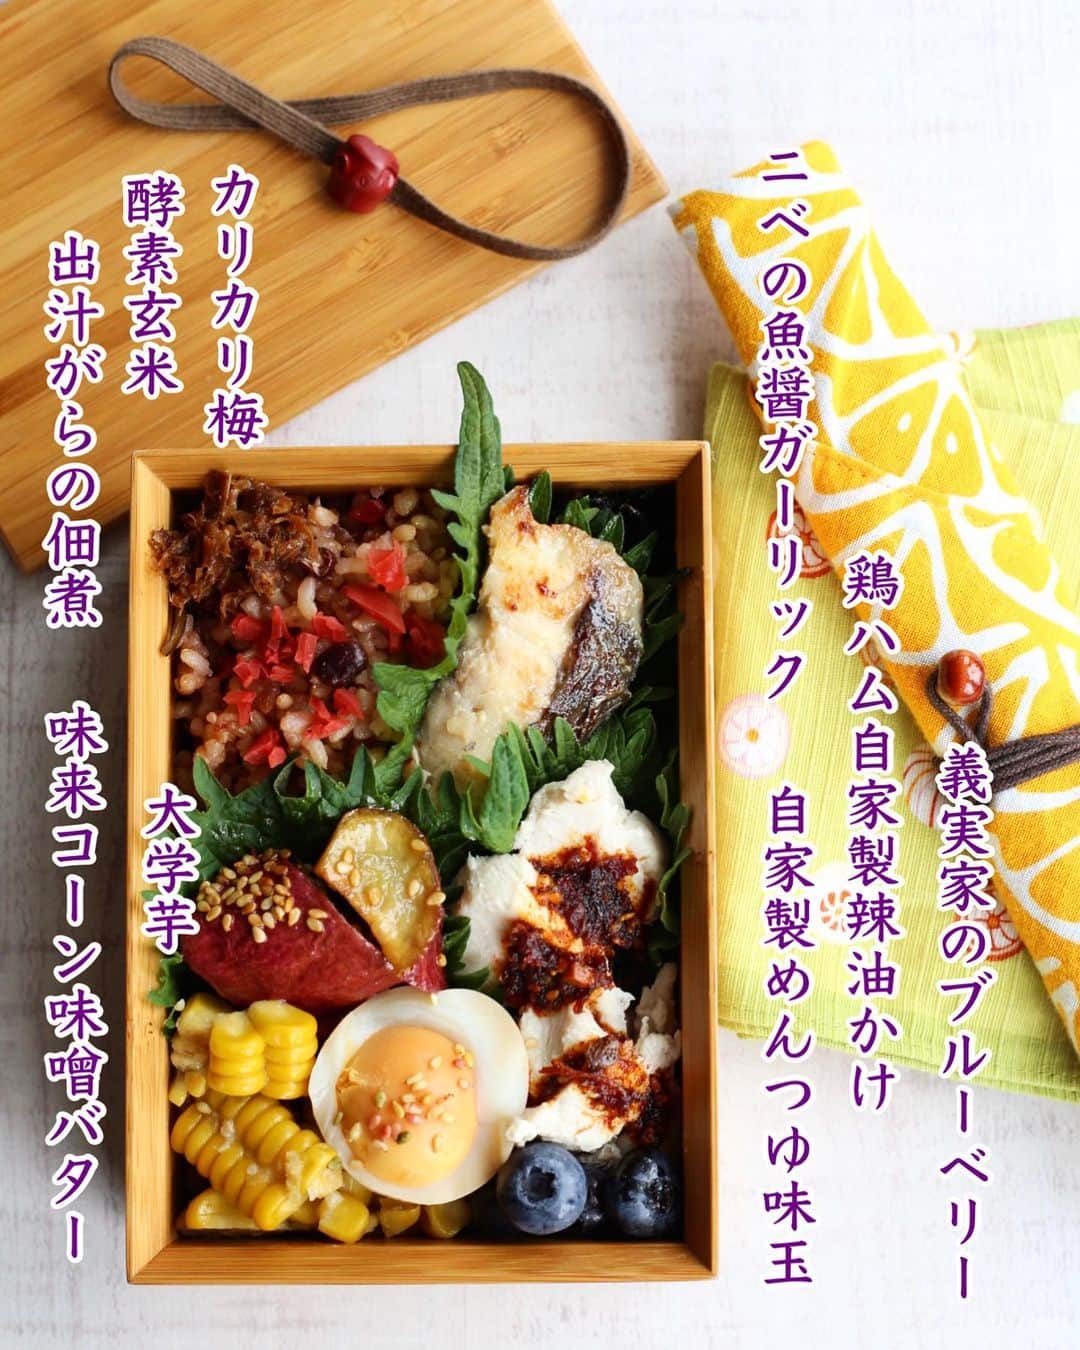 母熊?#お昼が楽しみになるお弁当??JAPANのインスタグラム：「. #お昼が楽しみになるお弁当  #娘弁当  今日はプロテイン重視でタンパク質多め！ お魚も鶏ムネも卵も入ってます😆  お魚は昨日のリールでご紹介した @fishlle.official #フィシュル さんの50%offサブスクのね😆👛✨✨  一回のセットに生食用も加熱用も入ってるのでバリエーションあって助かります。 お弁当にはちょうどいい、小さめサイズの切り身。 またもや「ニベ」というはじめましてのお魚😍 魚醤ガーリックなんて、自分ではなかなかしない味付けですよね！焼ける匂いはたまらなく美味しそう😆💕←母熊はまだ食べてないから嘘書けない😂  公式サイトは初回30%offだけど、母熊のクーポンなら50%offで購入できます🎶  お届け日の5日前までなら解約は自由✨✨ なので一回試して気に入ったら続けるもよし、悩むなら中断とか解約とかしてもいいと思います。 とりあえず50%offはとにかく🉐❣️  🐡🐟🐠🐡🐟🐠 母熊のフィシュルクーポン 新規購入者様50％off 【rosso】 🐡🐟🐠🐡🐟🐠  @rosso___ ←プロフィールのストーリーズハイライトから飛べます😆 クーポン使って🉐🉐に良質なお魚ライフをスタートしてくださいね❣️  #instafood #locari #ランチ#おうちごはん  #おうちごはんLover #japanfood #常備菜#フーディーテーブル #マカロニメイト #てづくりごはん365 #かんたんレシピ #フィシュル飯 #fishlle #時短レシピ #未利用魚 #SDGs」